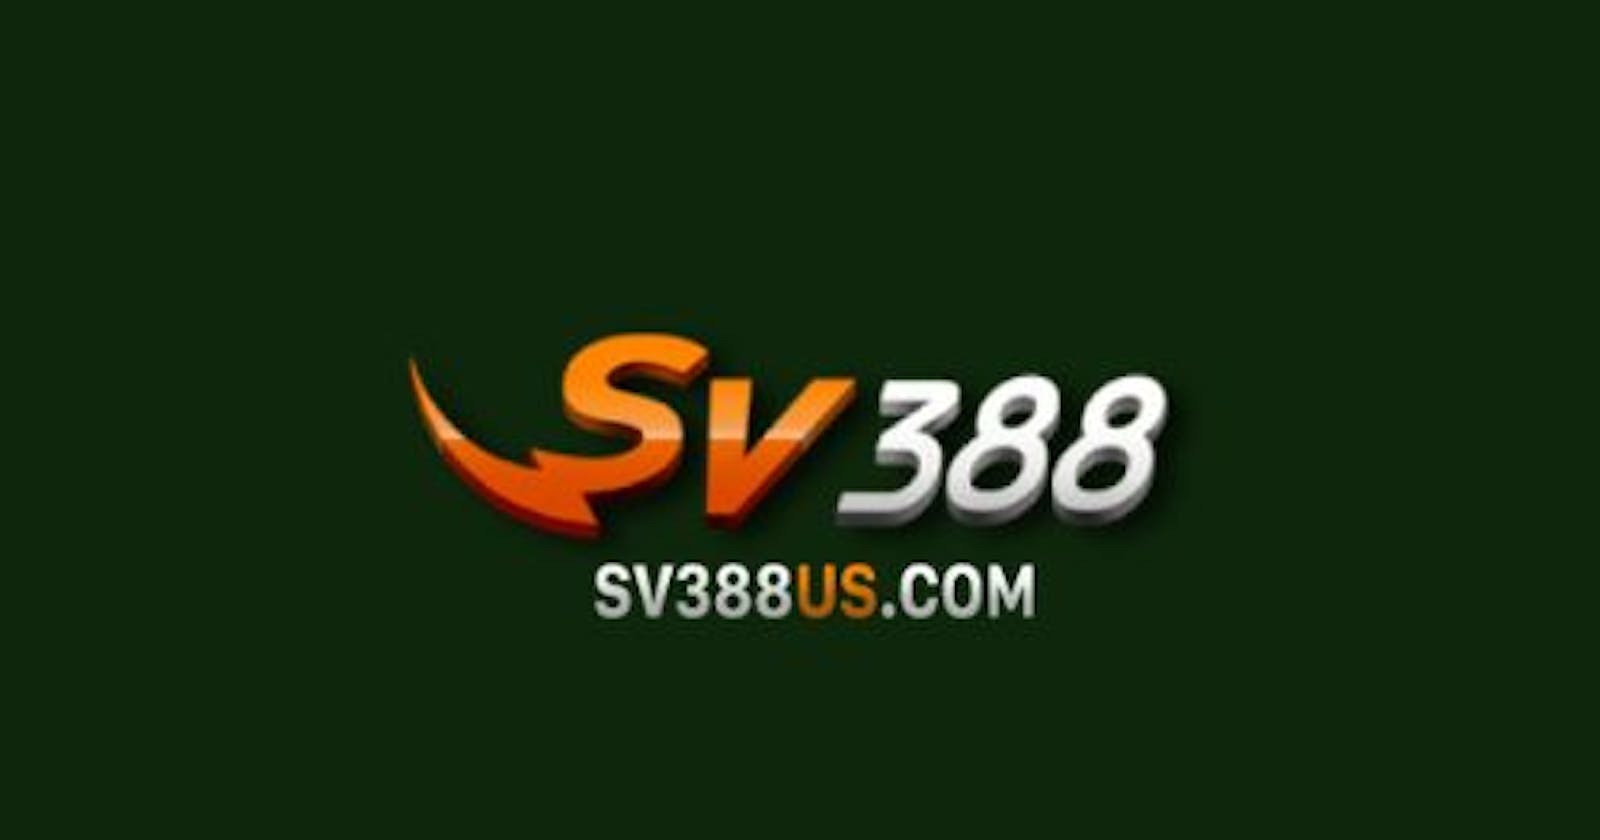 SV388 | SV388 US - Trang chủ nhà cái đá gà uy tín nhất SV388